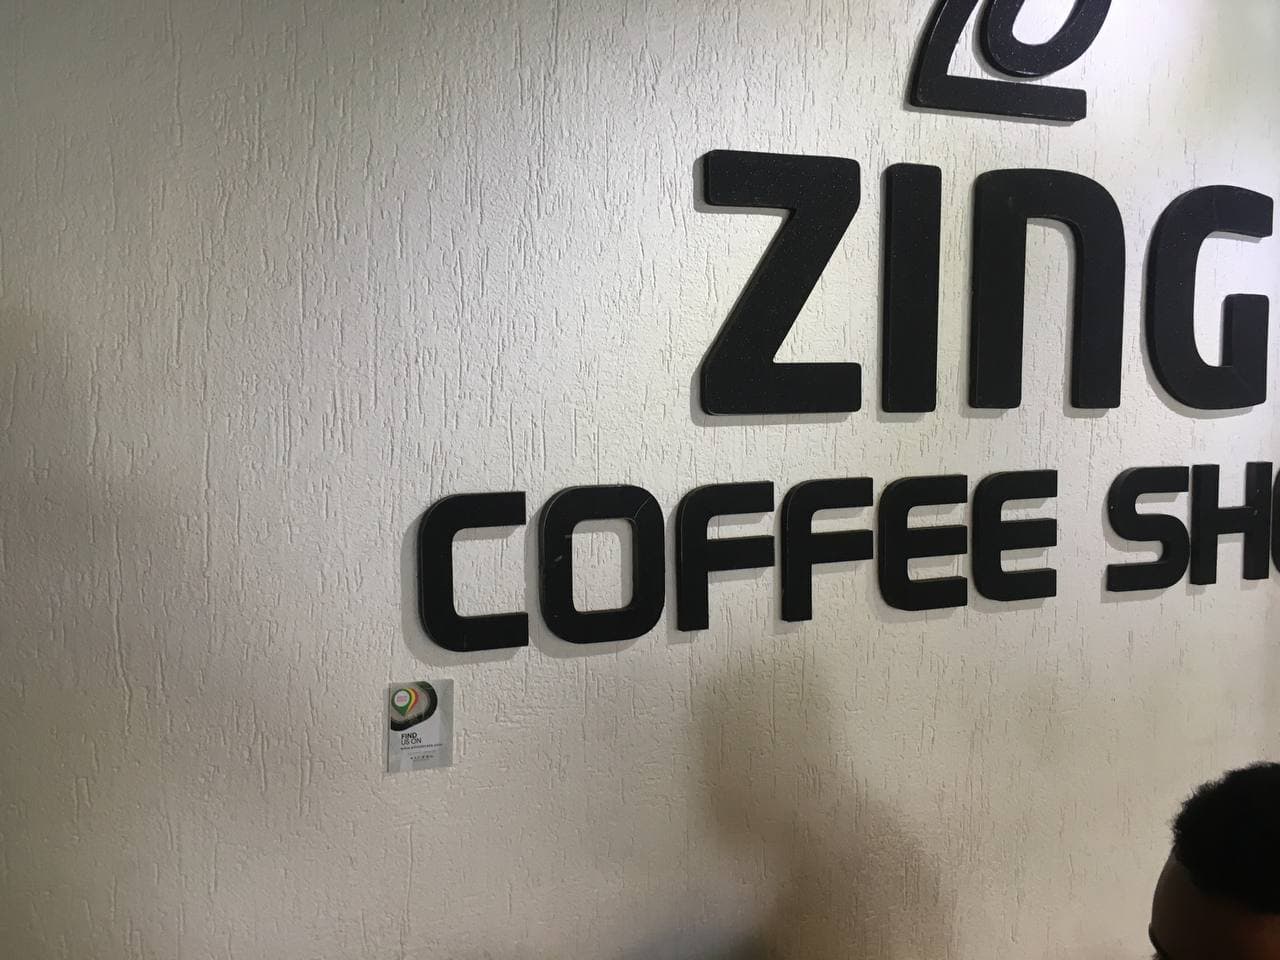 Zing coffee